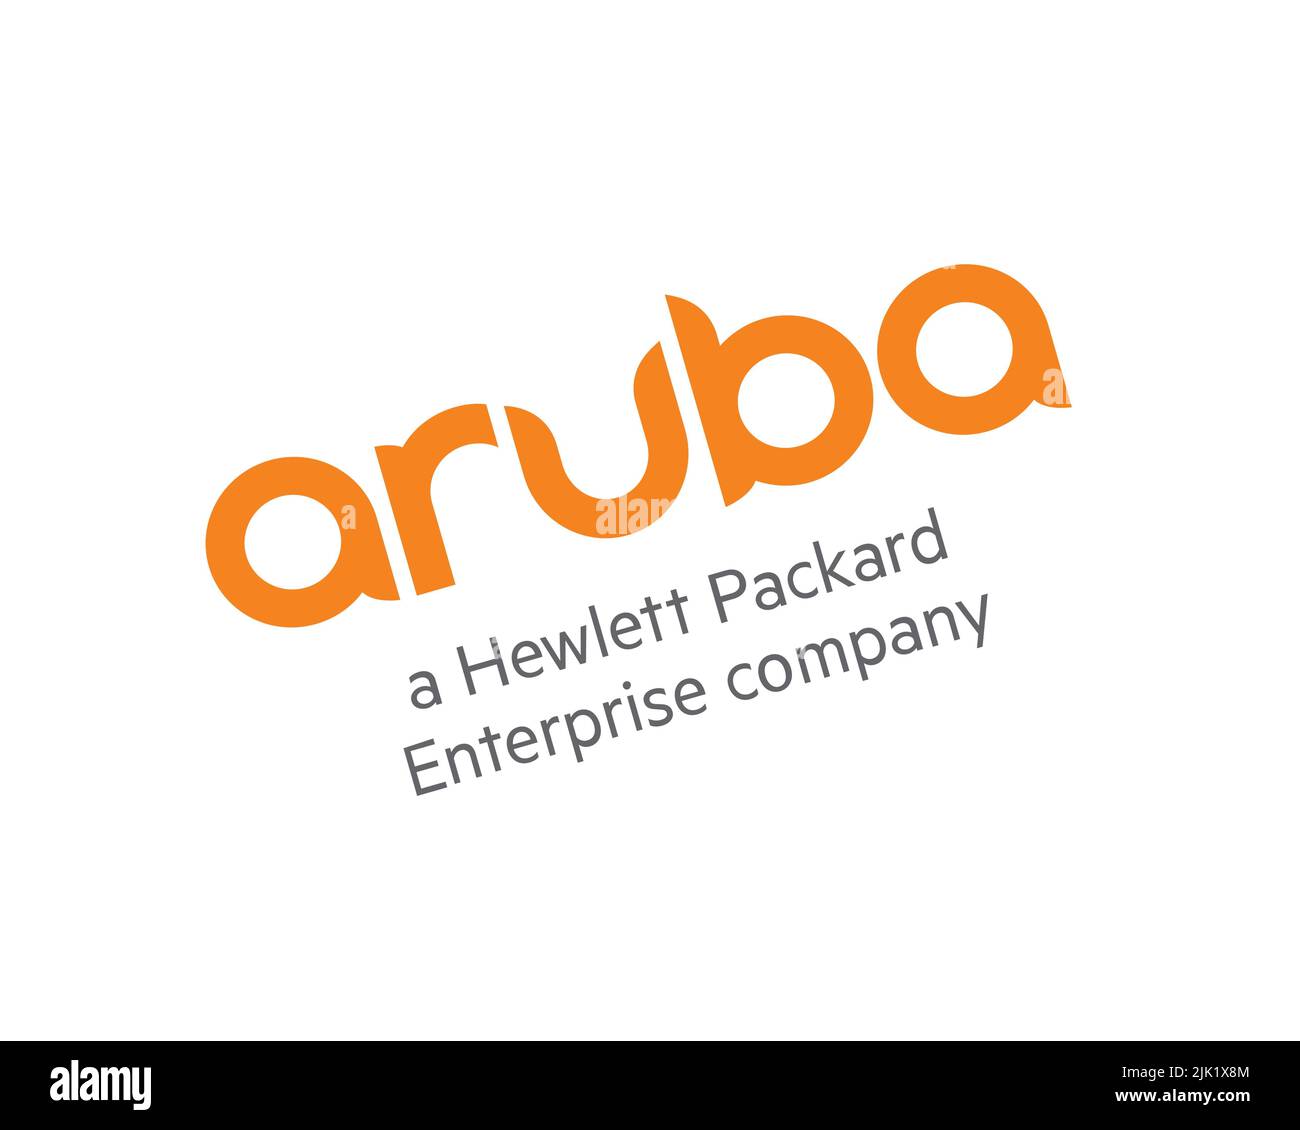 Aruba Networks, logo pivoté, arrière-plan blanc Banque D'Images